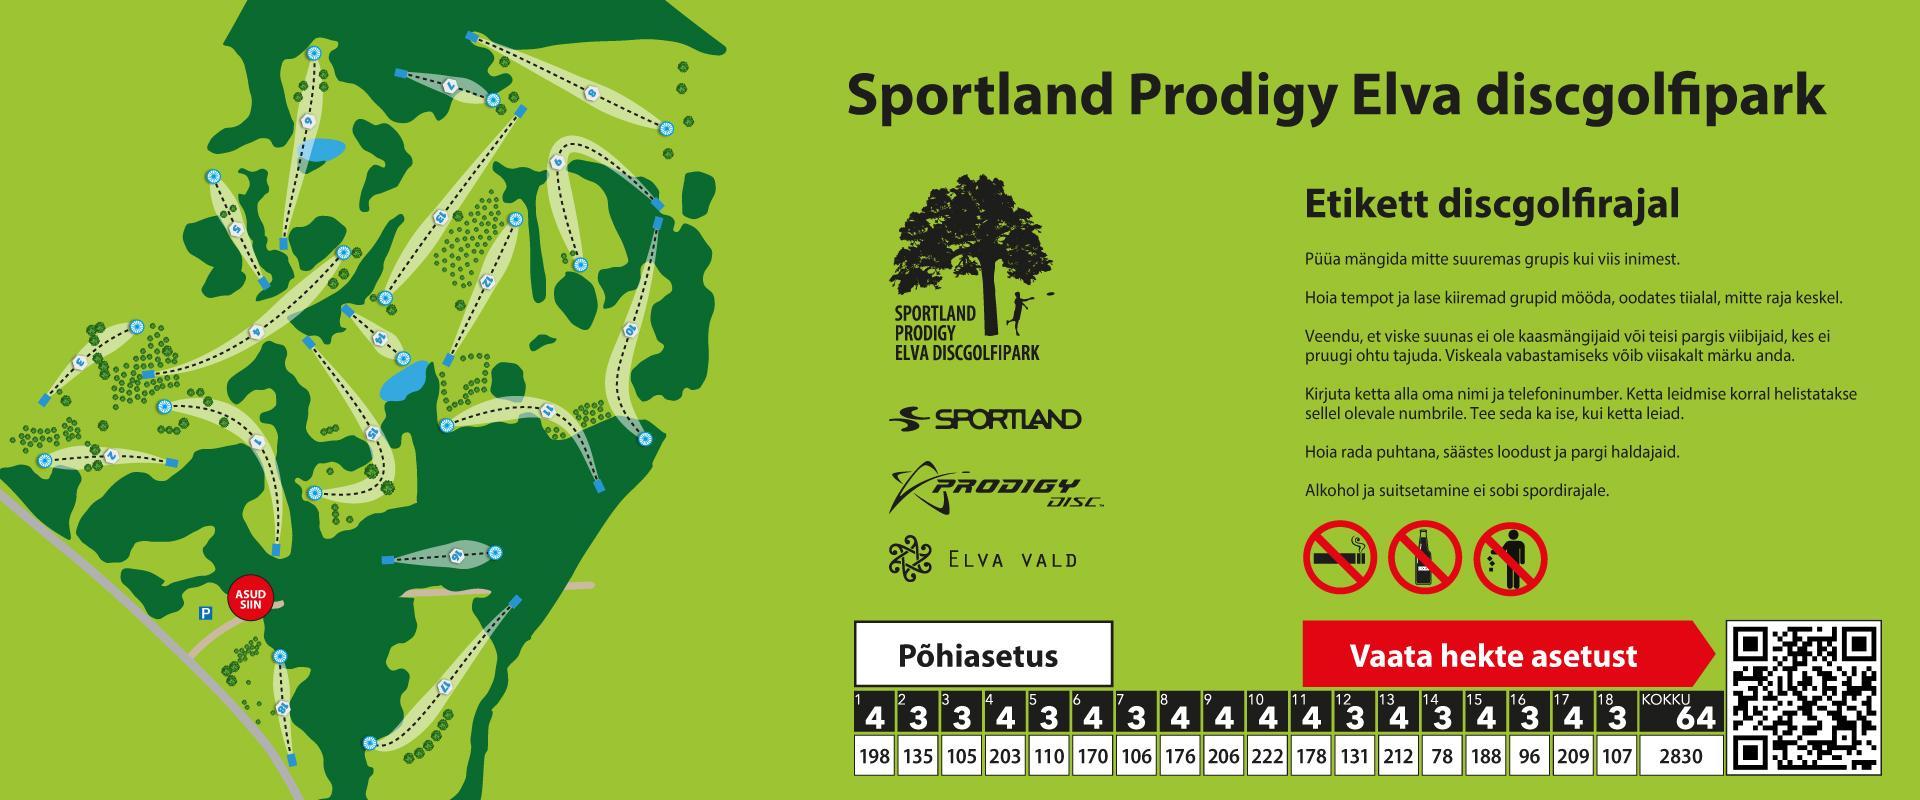 Sportland Prodigy Elva Disc Golf Park